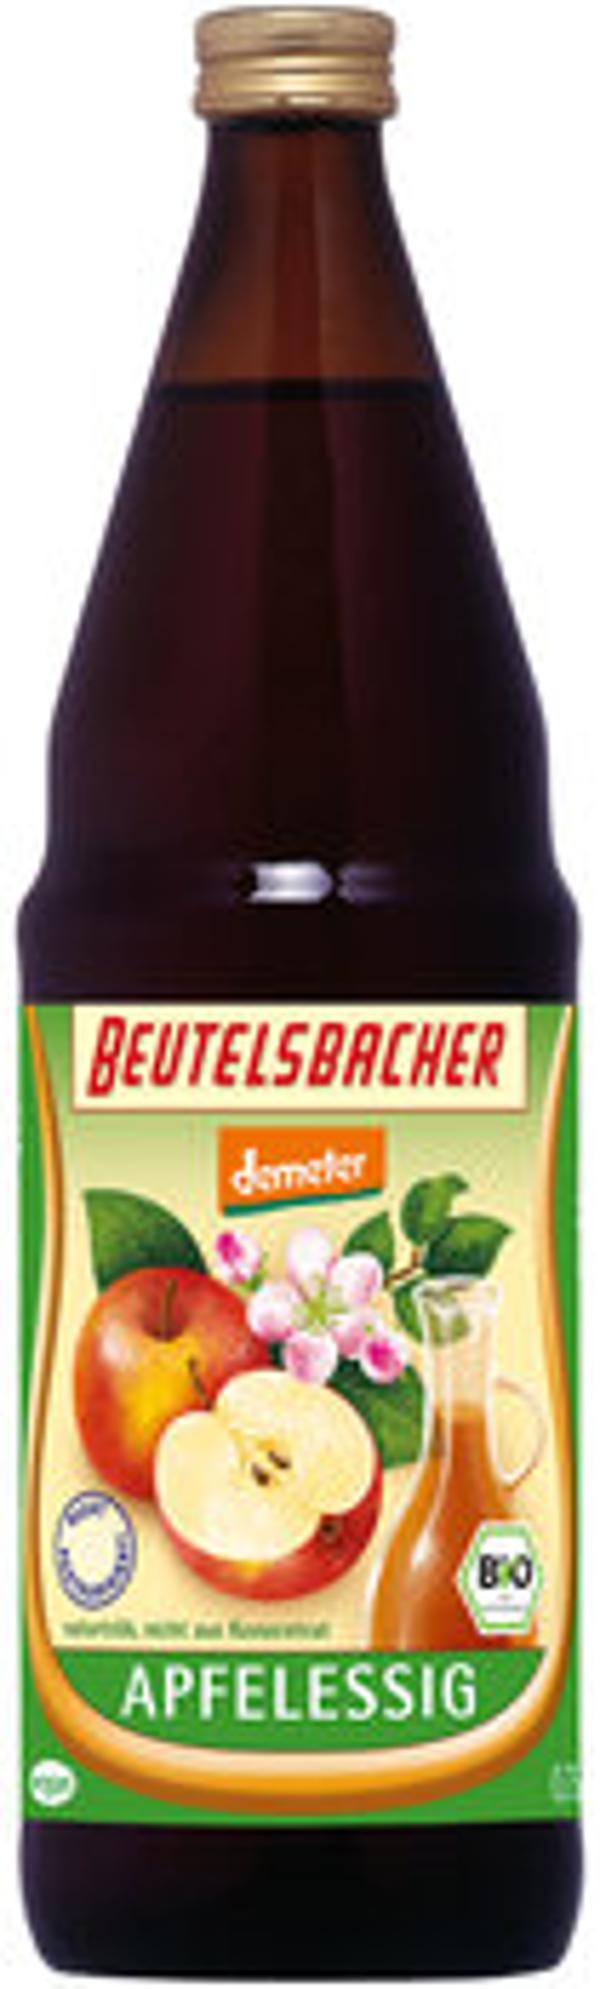 Produktfoto zu Apfelessig Beutelsbacher